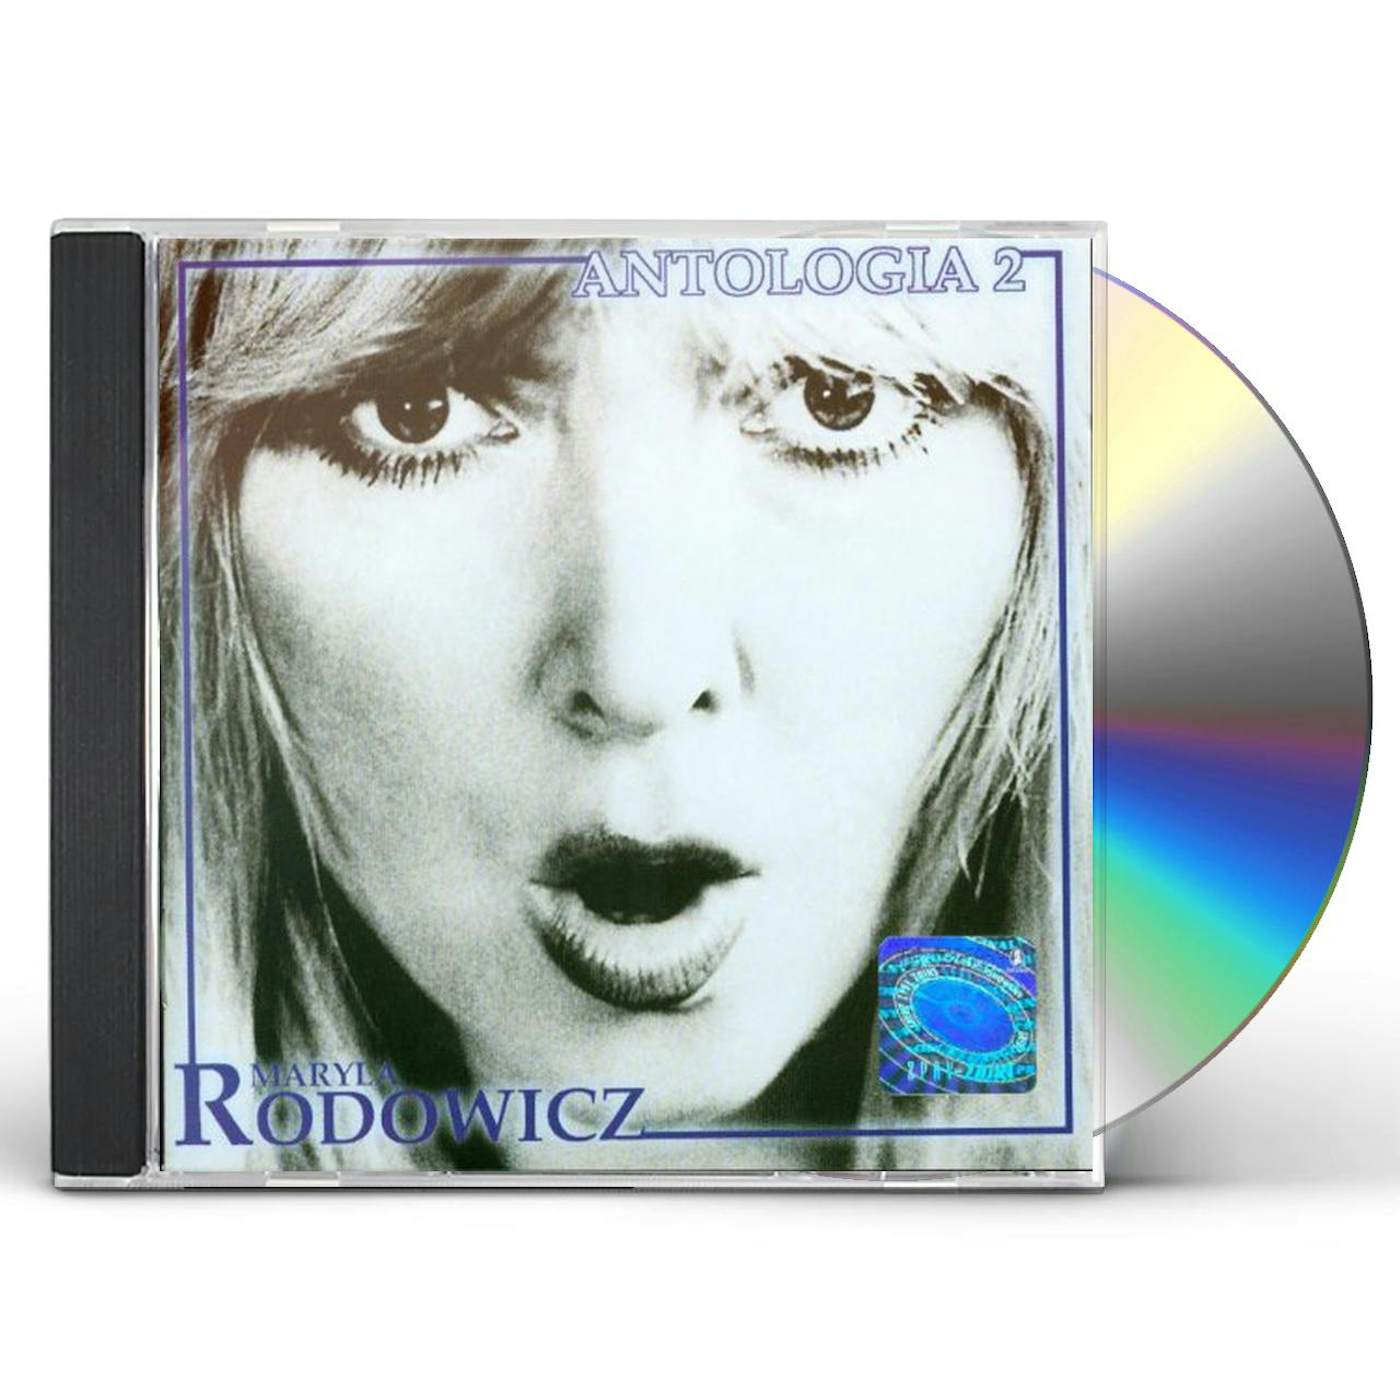 Maryla Rodowicz ANTOLOGIA VOL2 CD